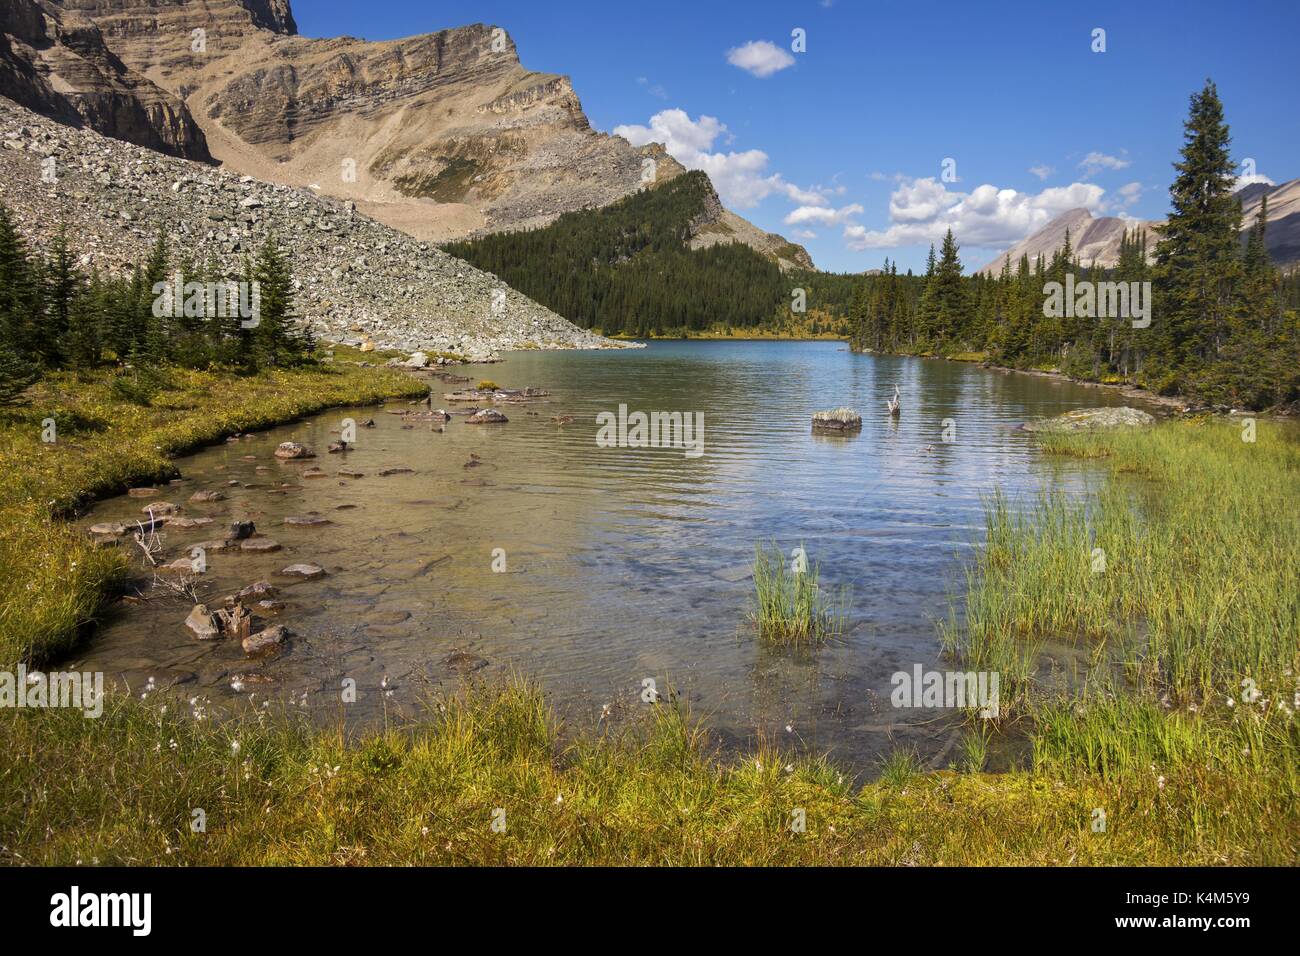 Vista panorámica del lago Blue Mountain y Green Alpine Meadow. Senderismo de verano en el Parque Nacional Banff, Rocosas Canadienses Foto de stock